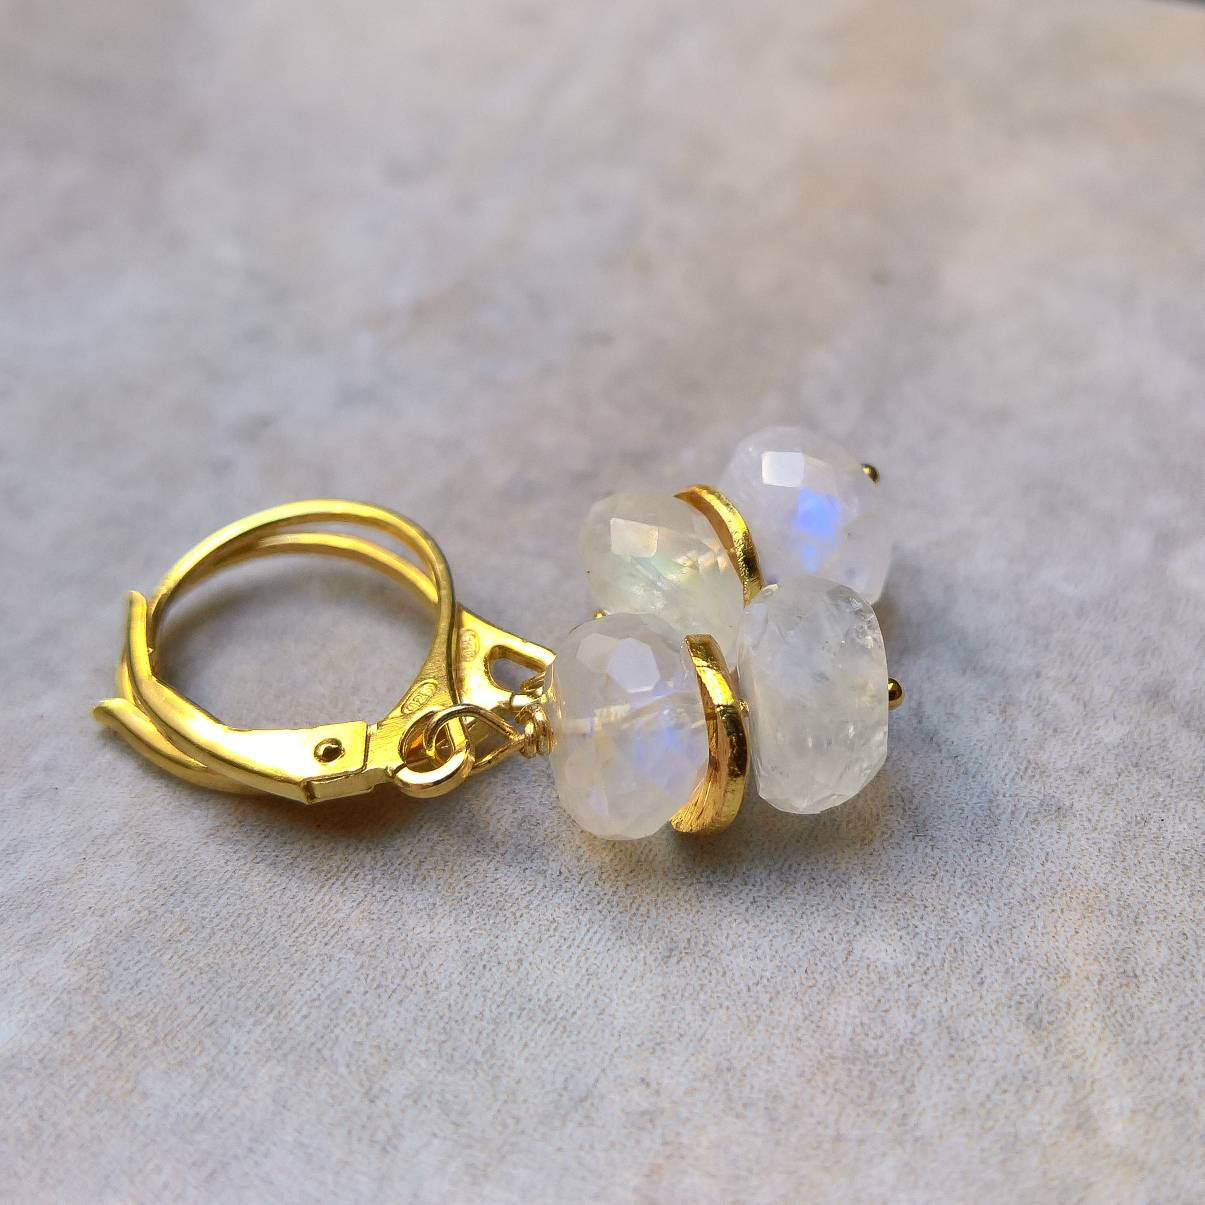 Rainbow moonstone drop earrings in gold vermeil